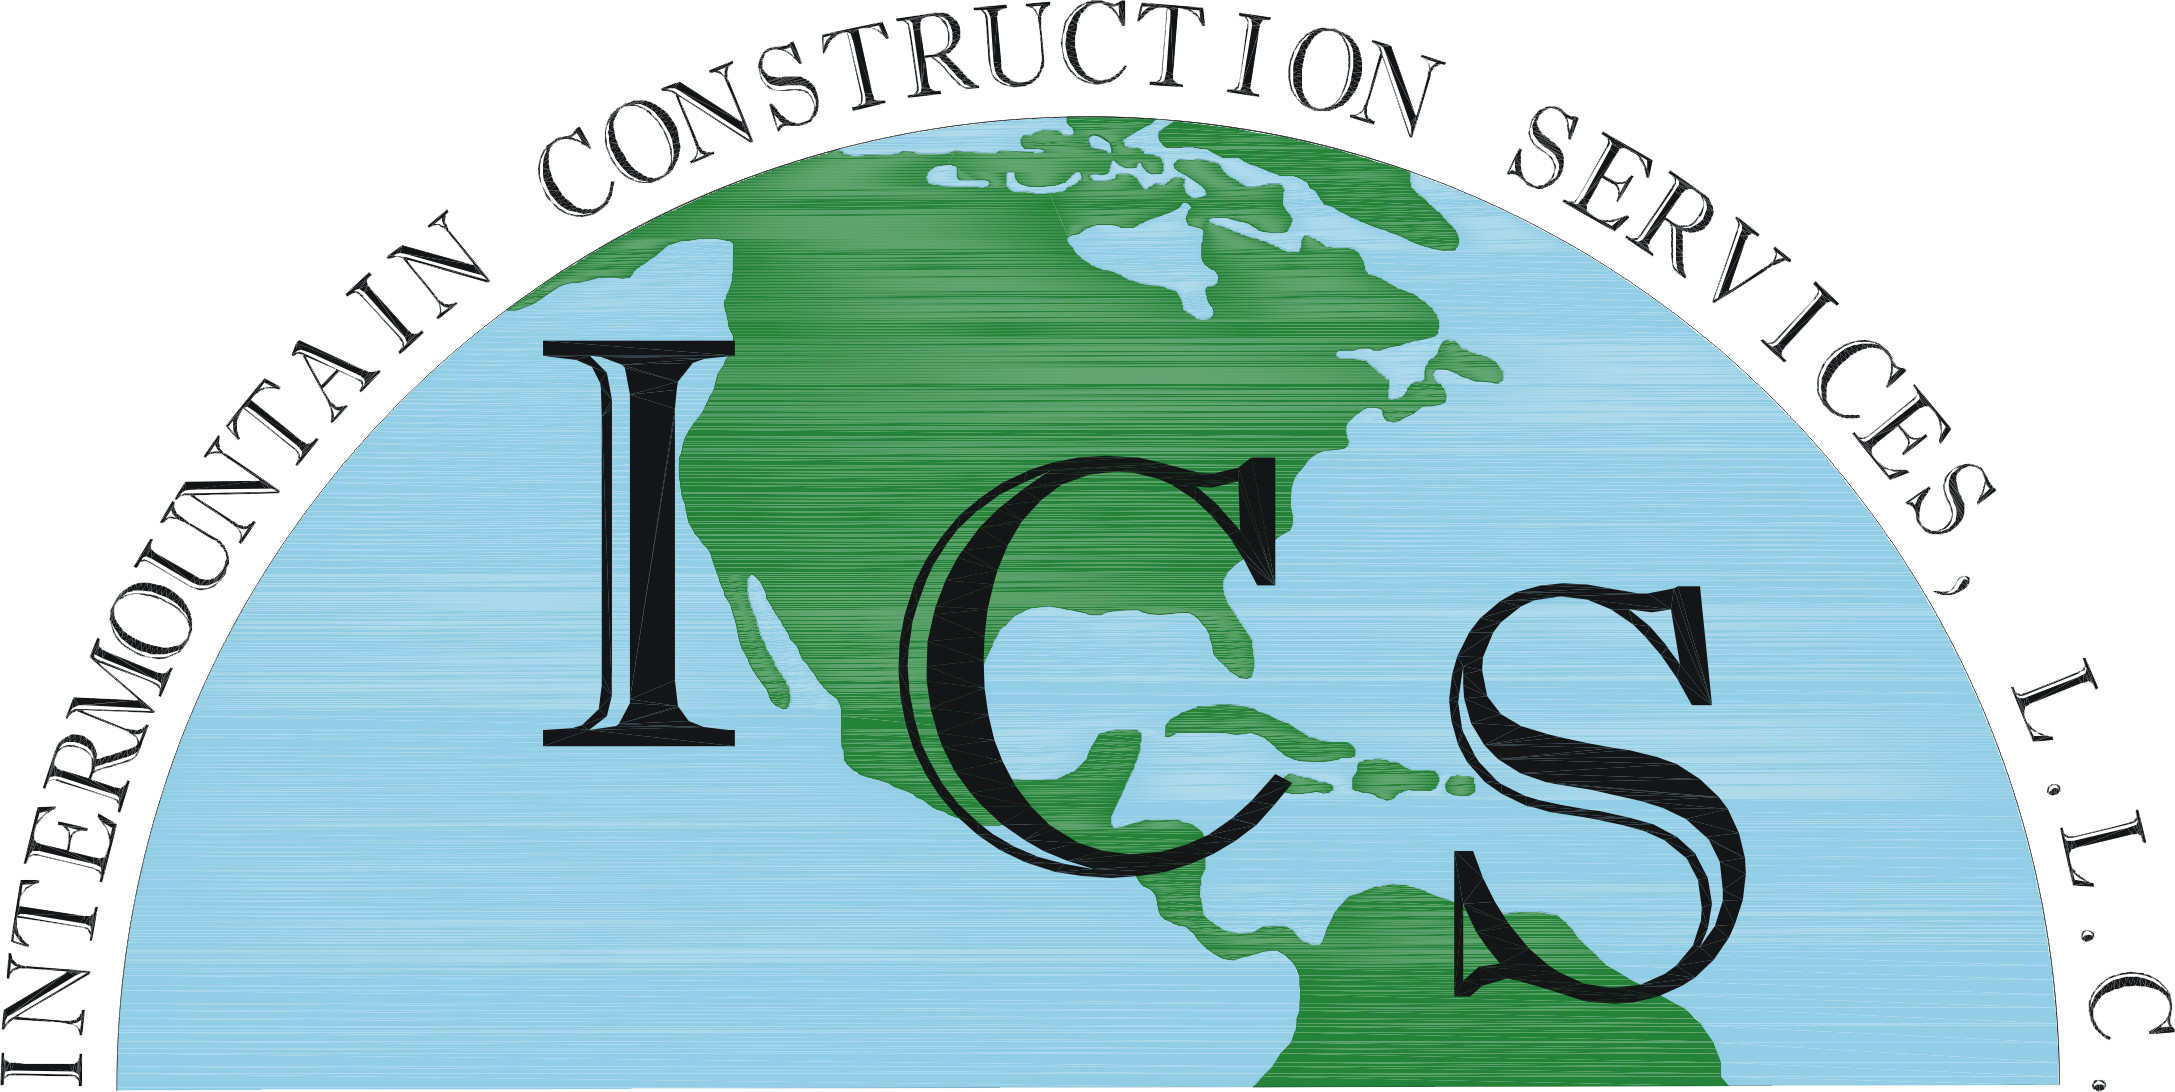 Intermountain Construction Services